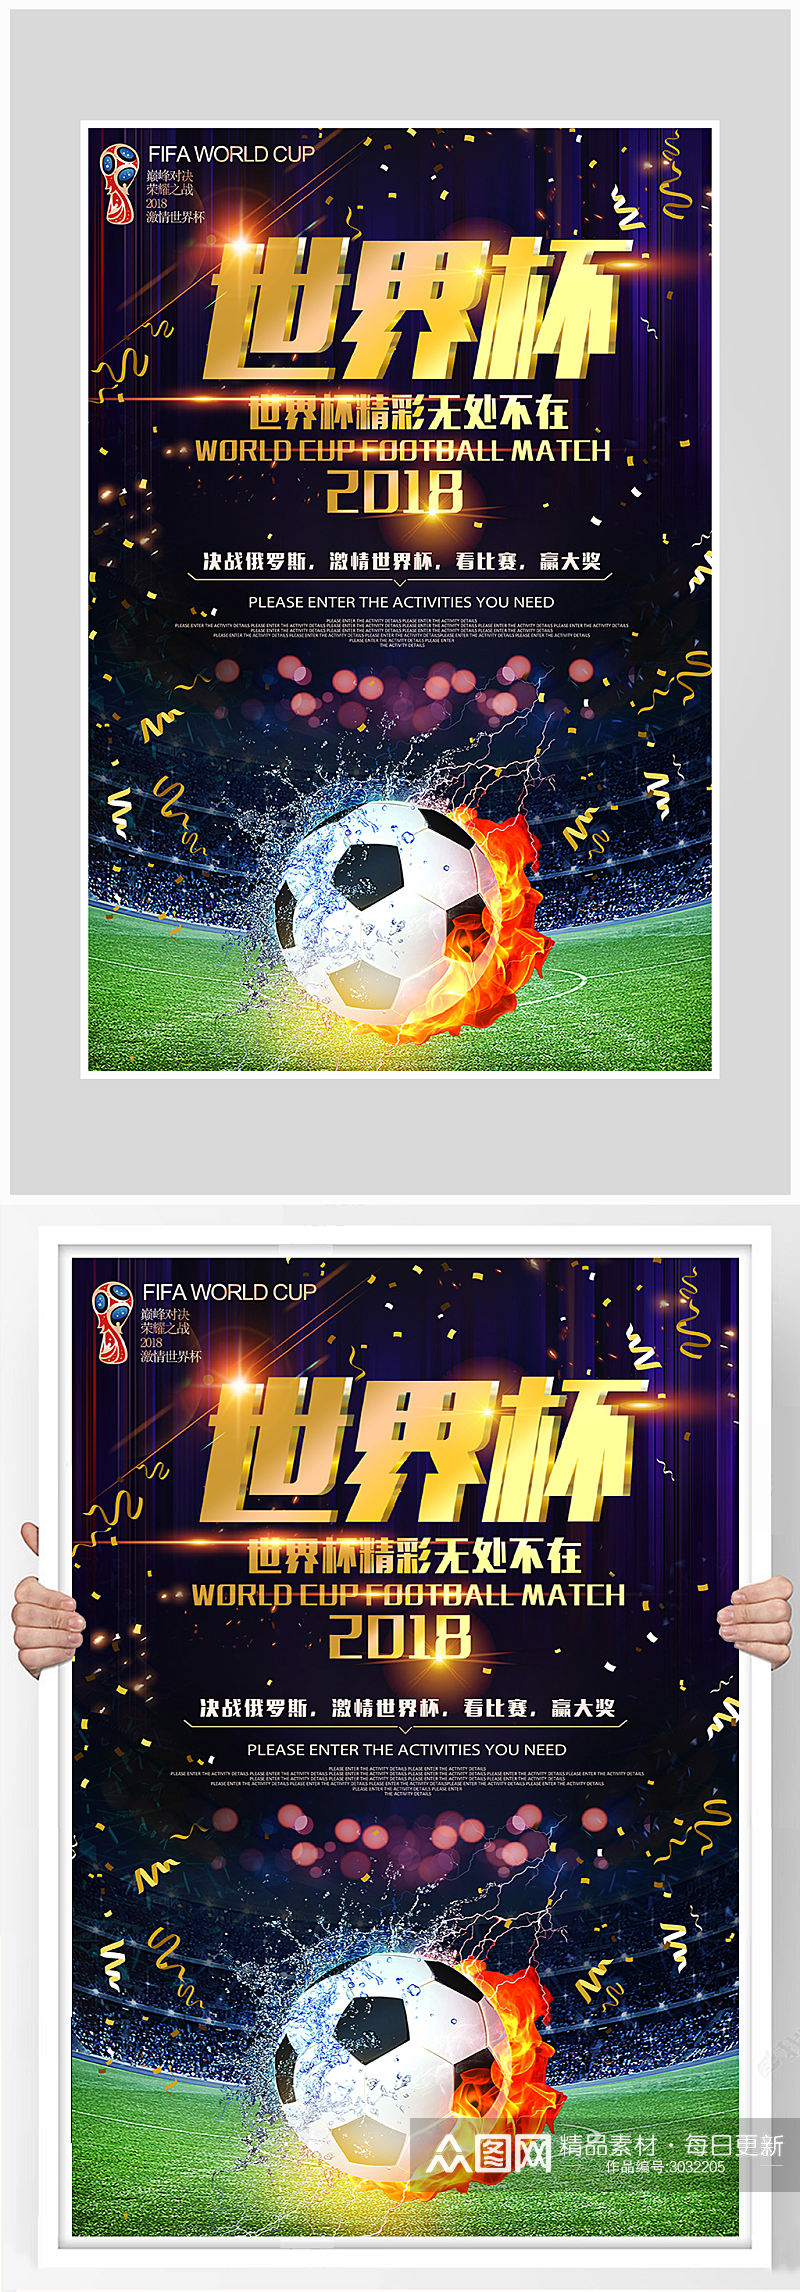 大气世界杯足球比赛海报设计素材